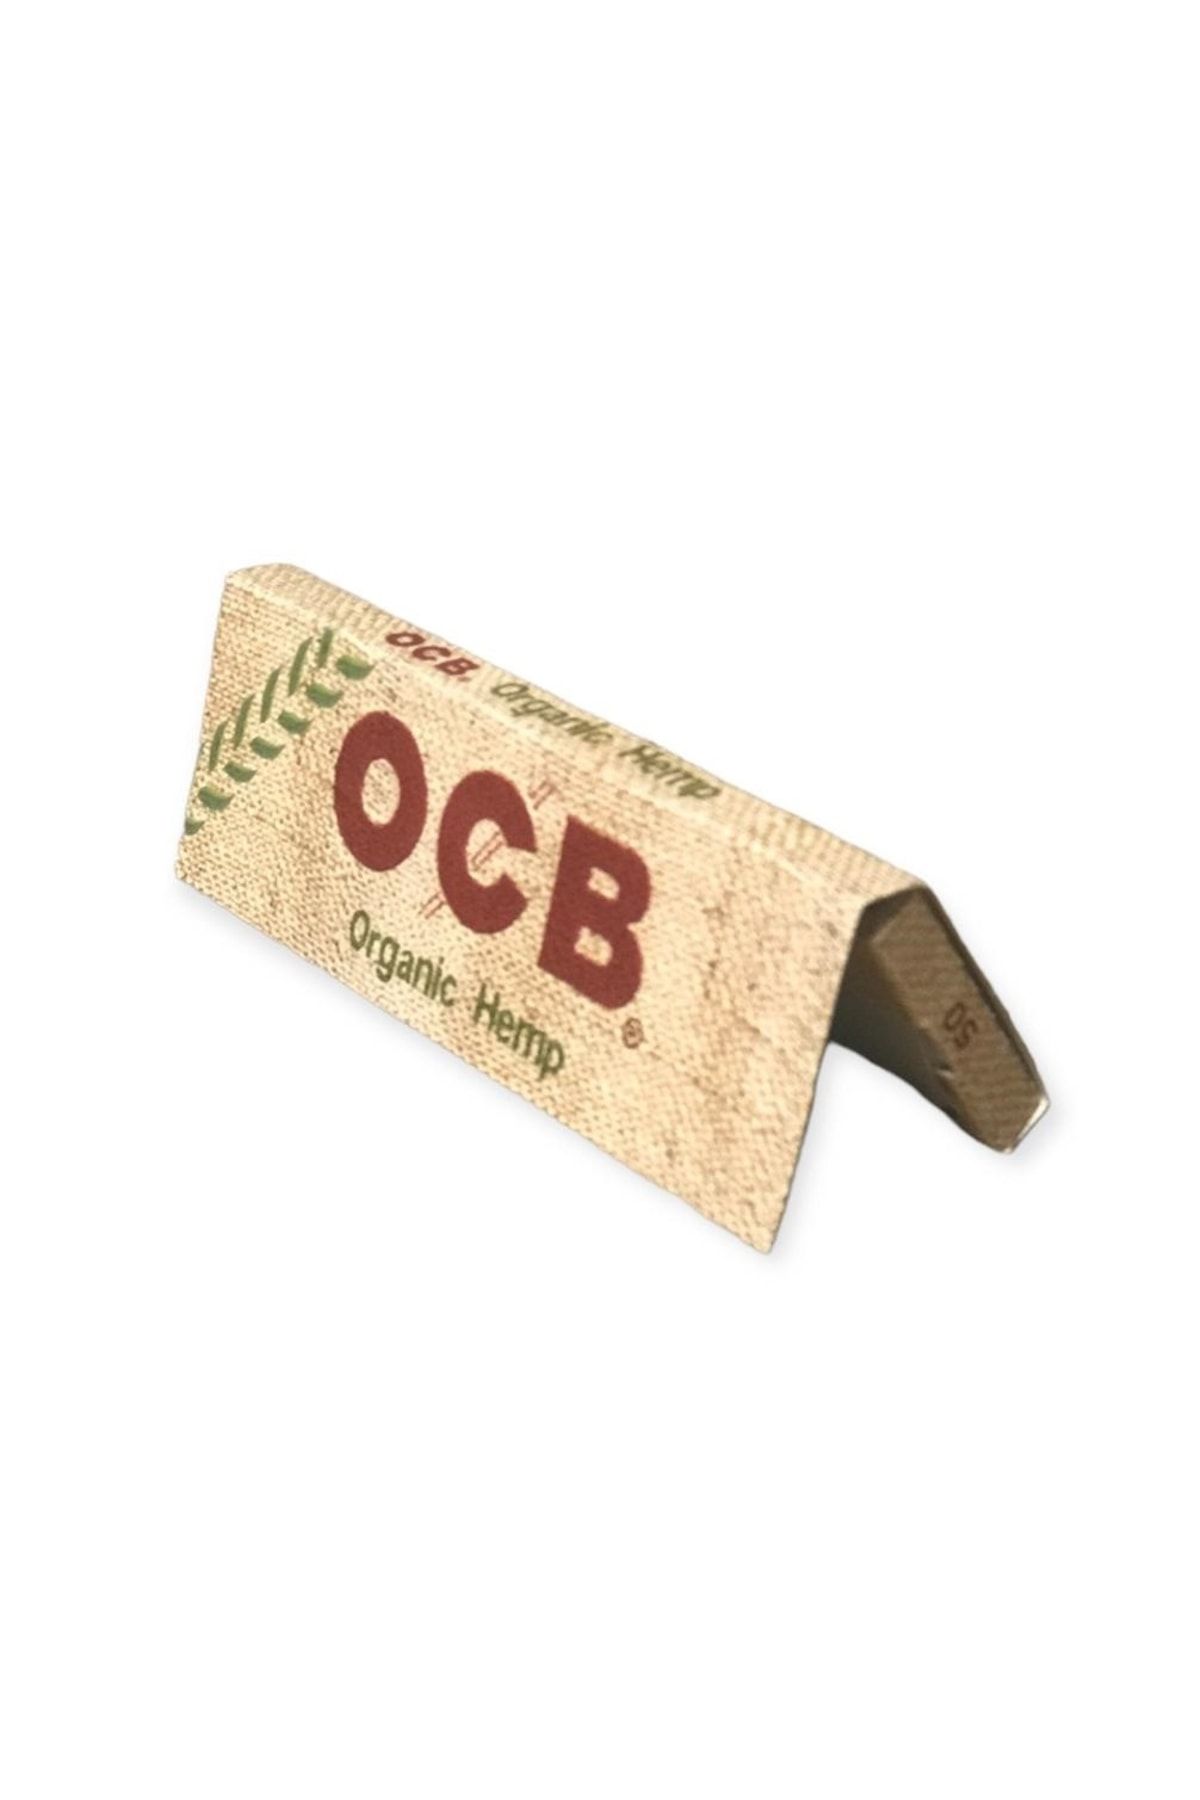 OCB Organik 50 Li Kağıt 5 Adet Fiyatı, Yorumları - Trendyol